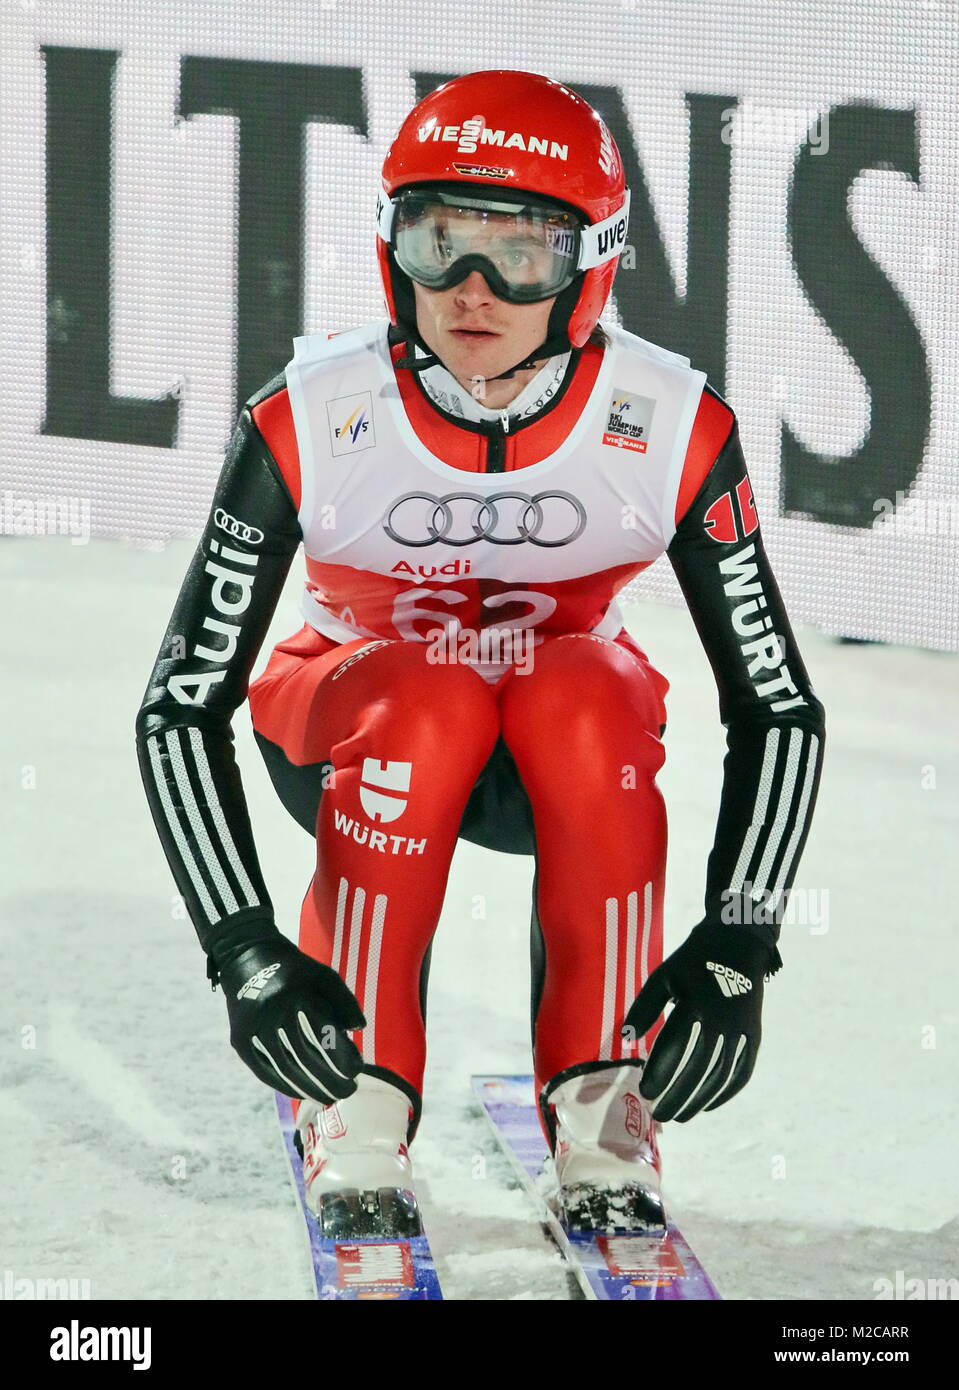 Skispringer Richard FREITAG bei der Qualifikation für 63. Vierschanzentournee Auftaktspringen Oberstdorf Stock Photo